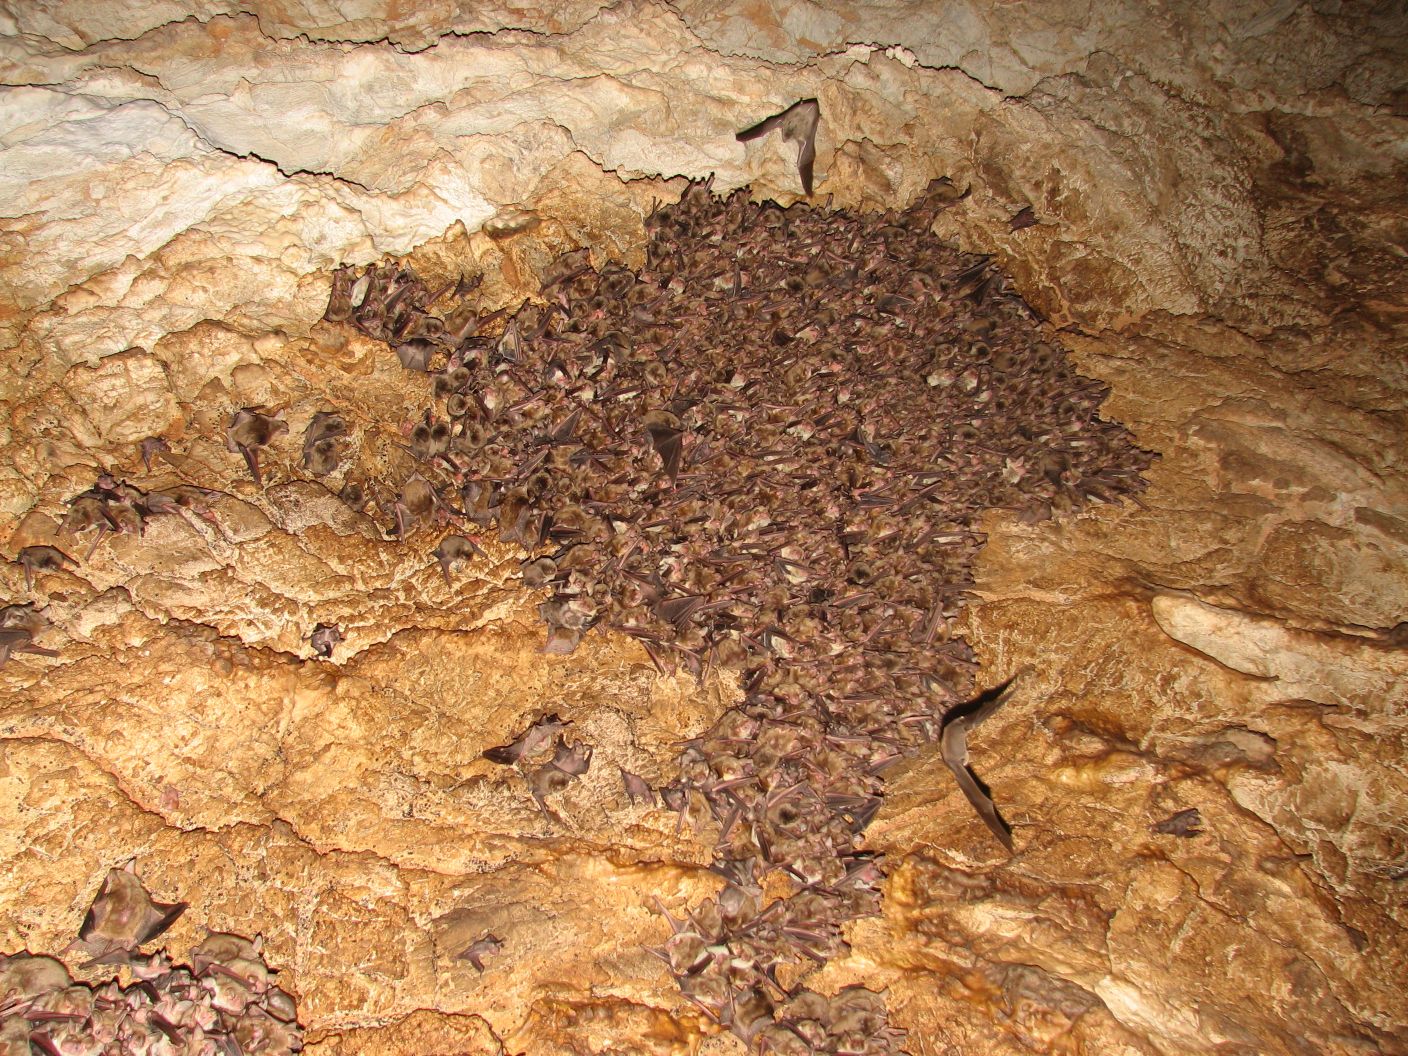 Γνωρίστε τον κόσμο των νυχτερίδων στο Μουσείο Φυσικής Ιστορίας Κρήτης